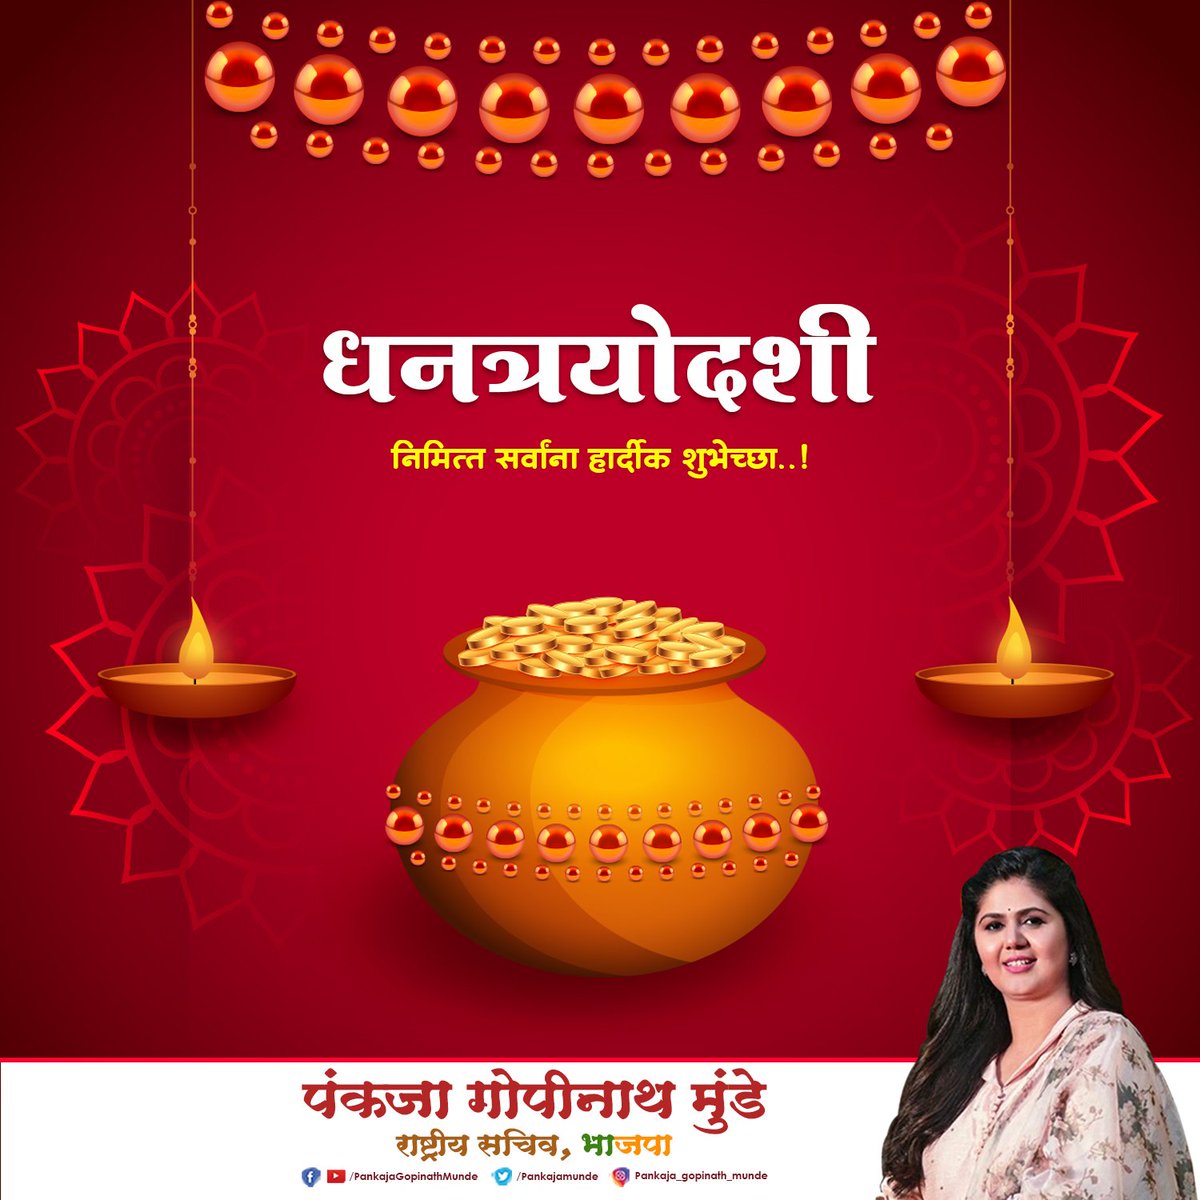 धनत्रयोदशी निमित्त सर्वांना मंगलमय शुभेच्छा !! #Diwali